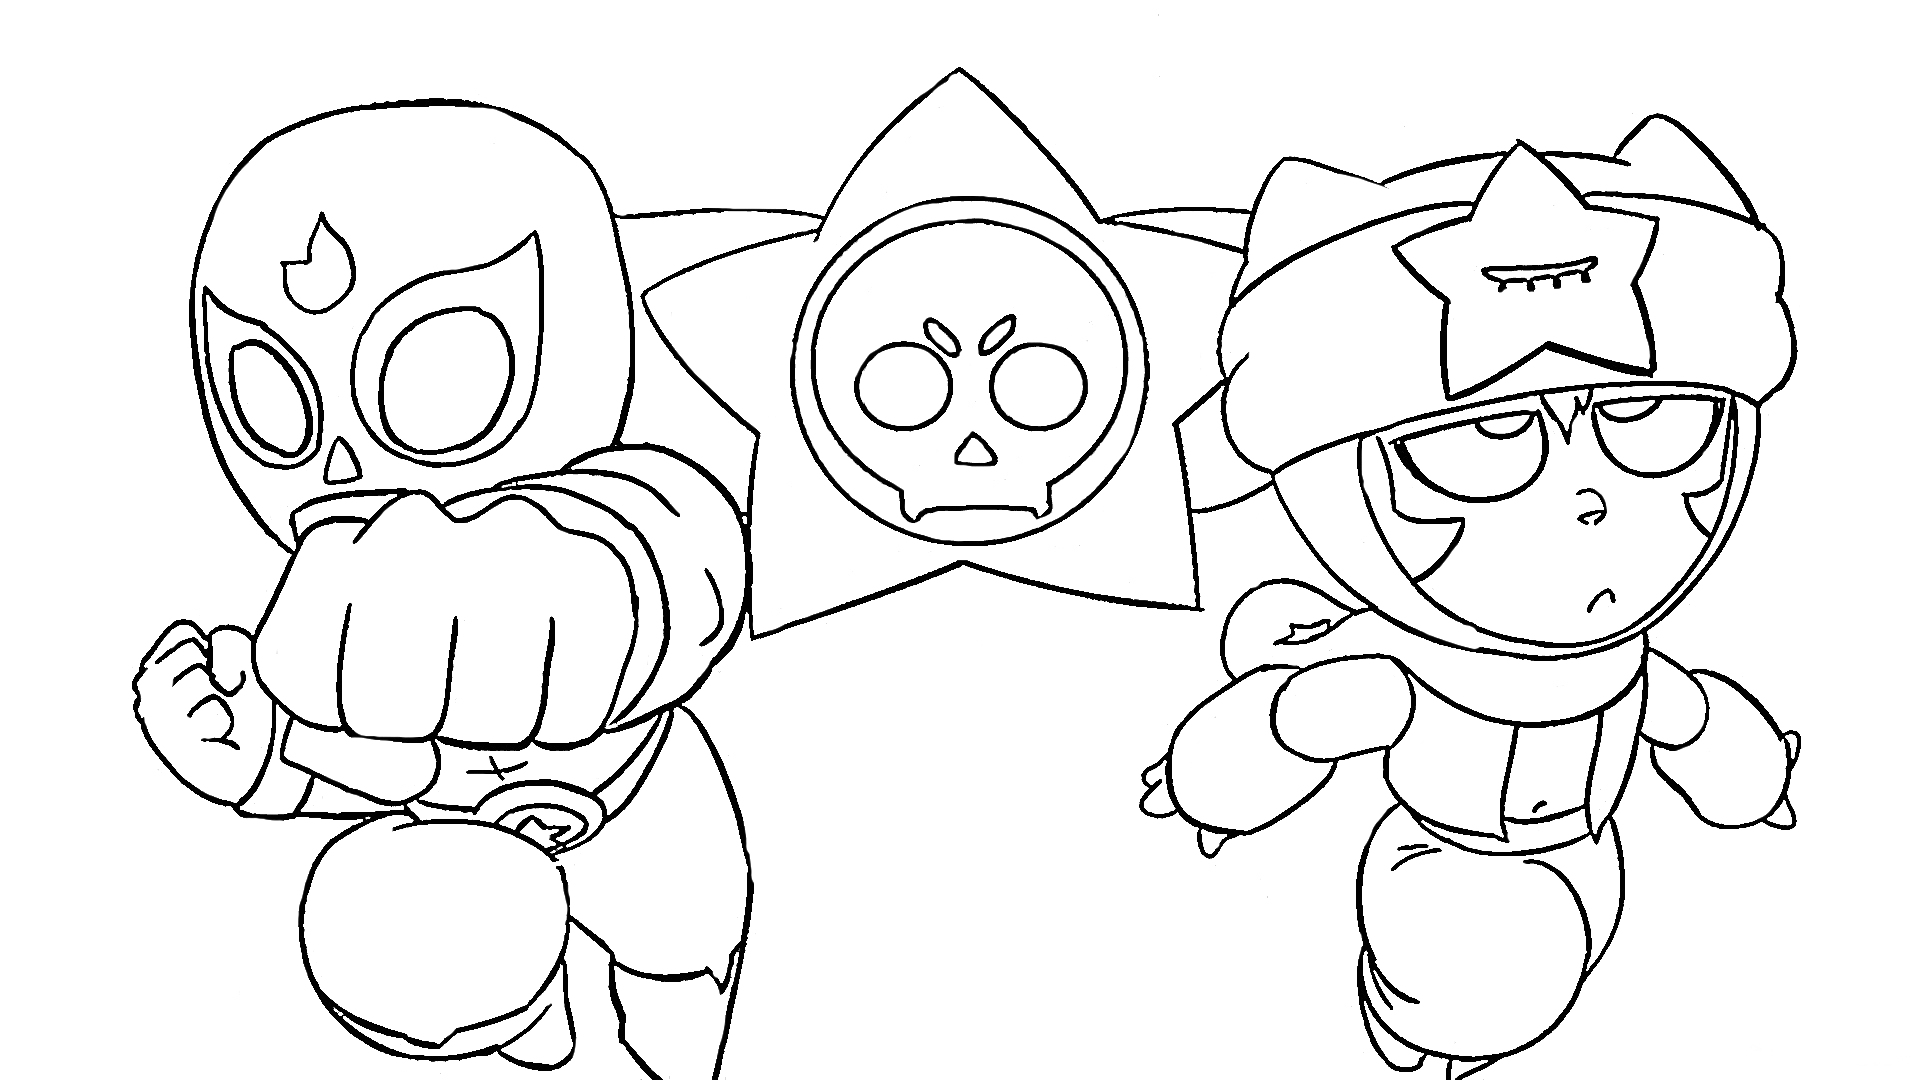 Раскраска Двое персонажей в маскарадных костюмах с символом черепа в звезде на заднем плане